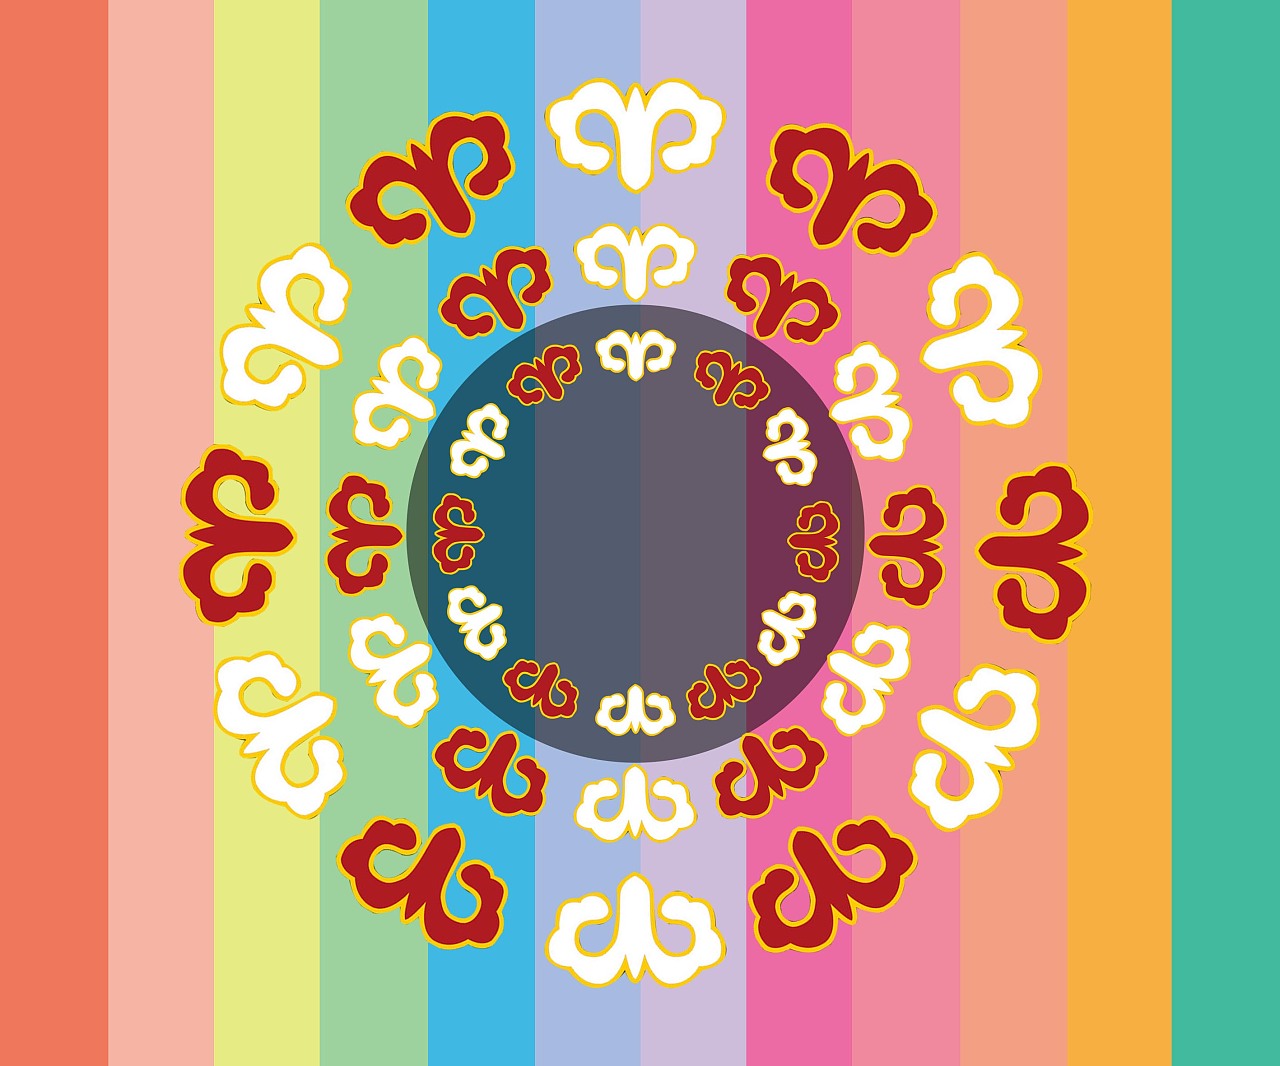 羌族纹样的重新组合,结合了羌族典型的羊角花,转转菊等元素